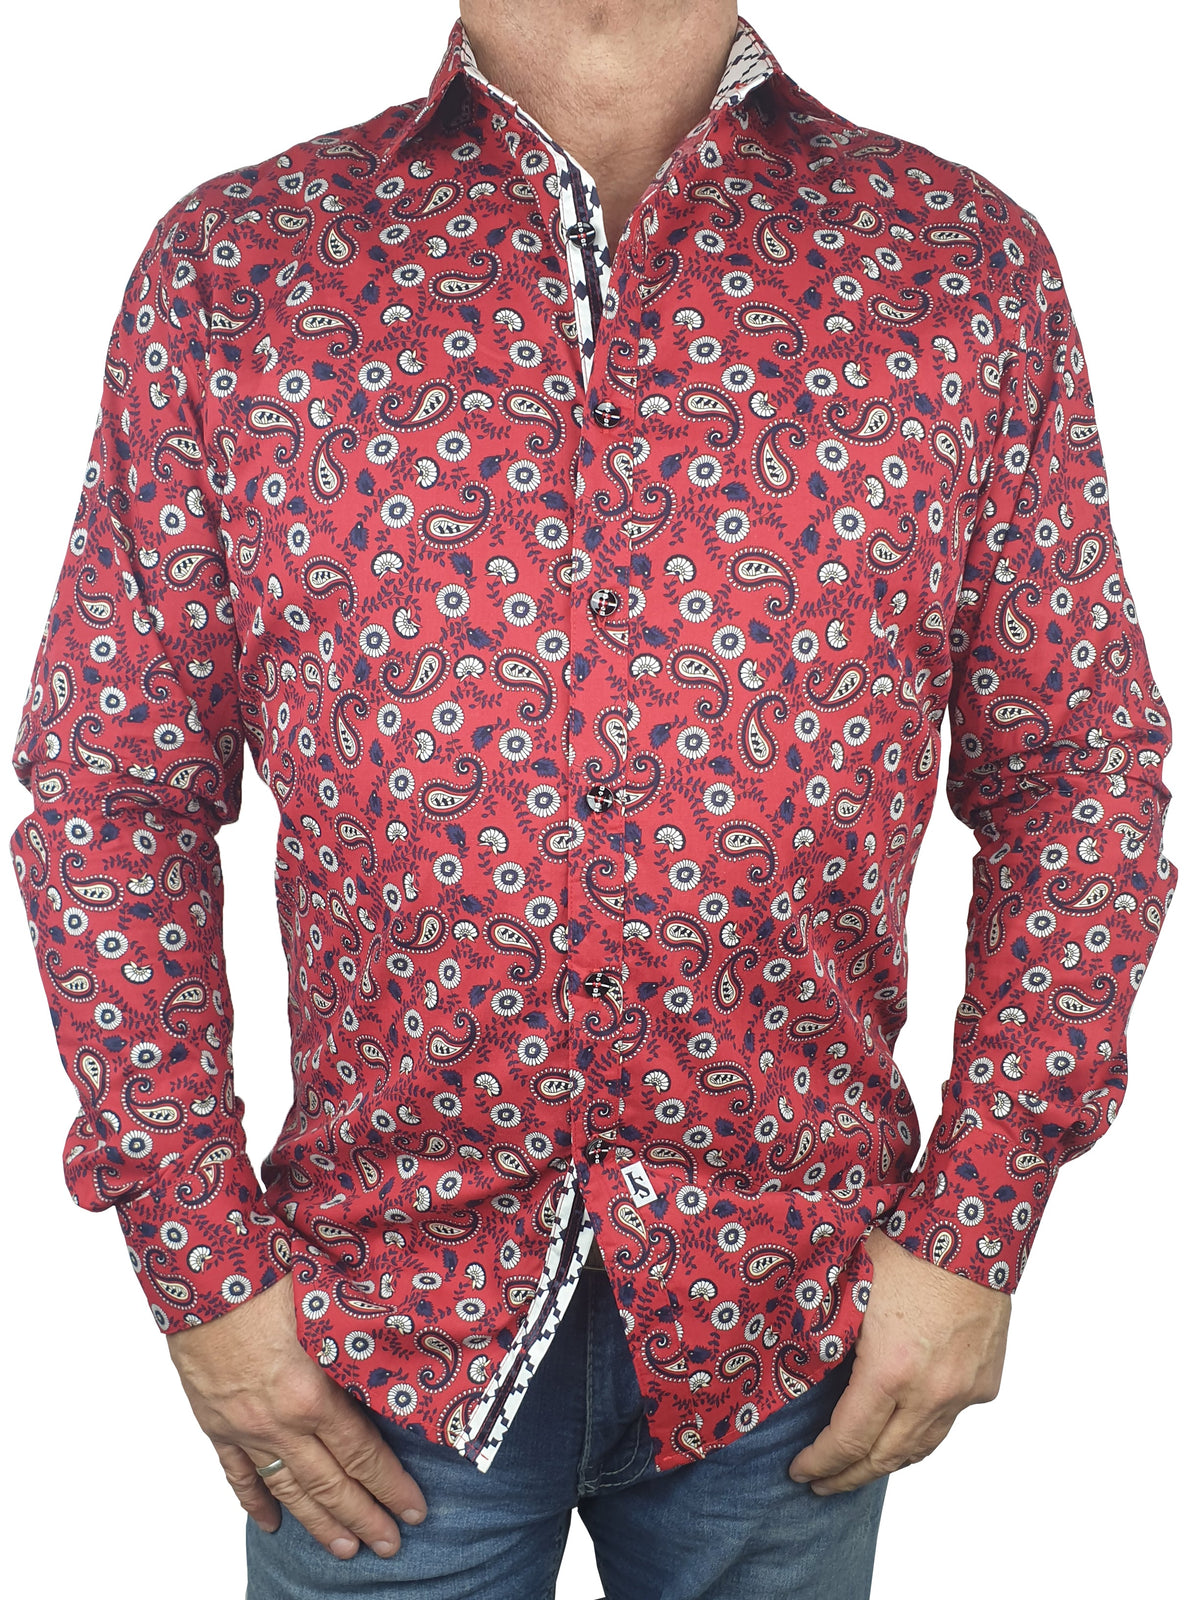 Bandit Paisley Cotton L/S Shirt - Red